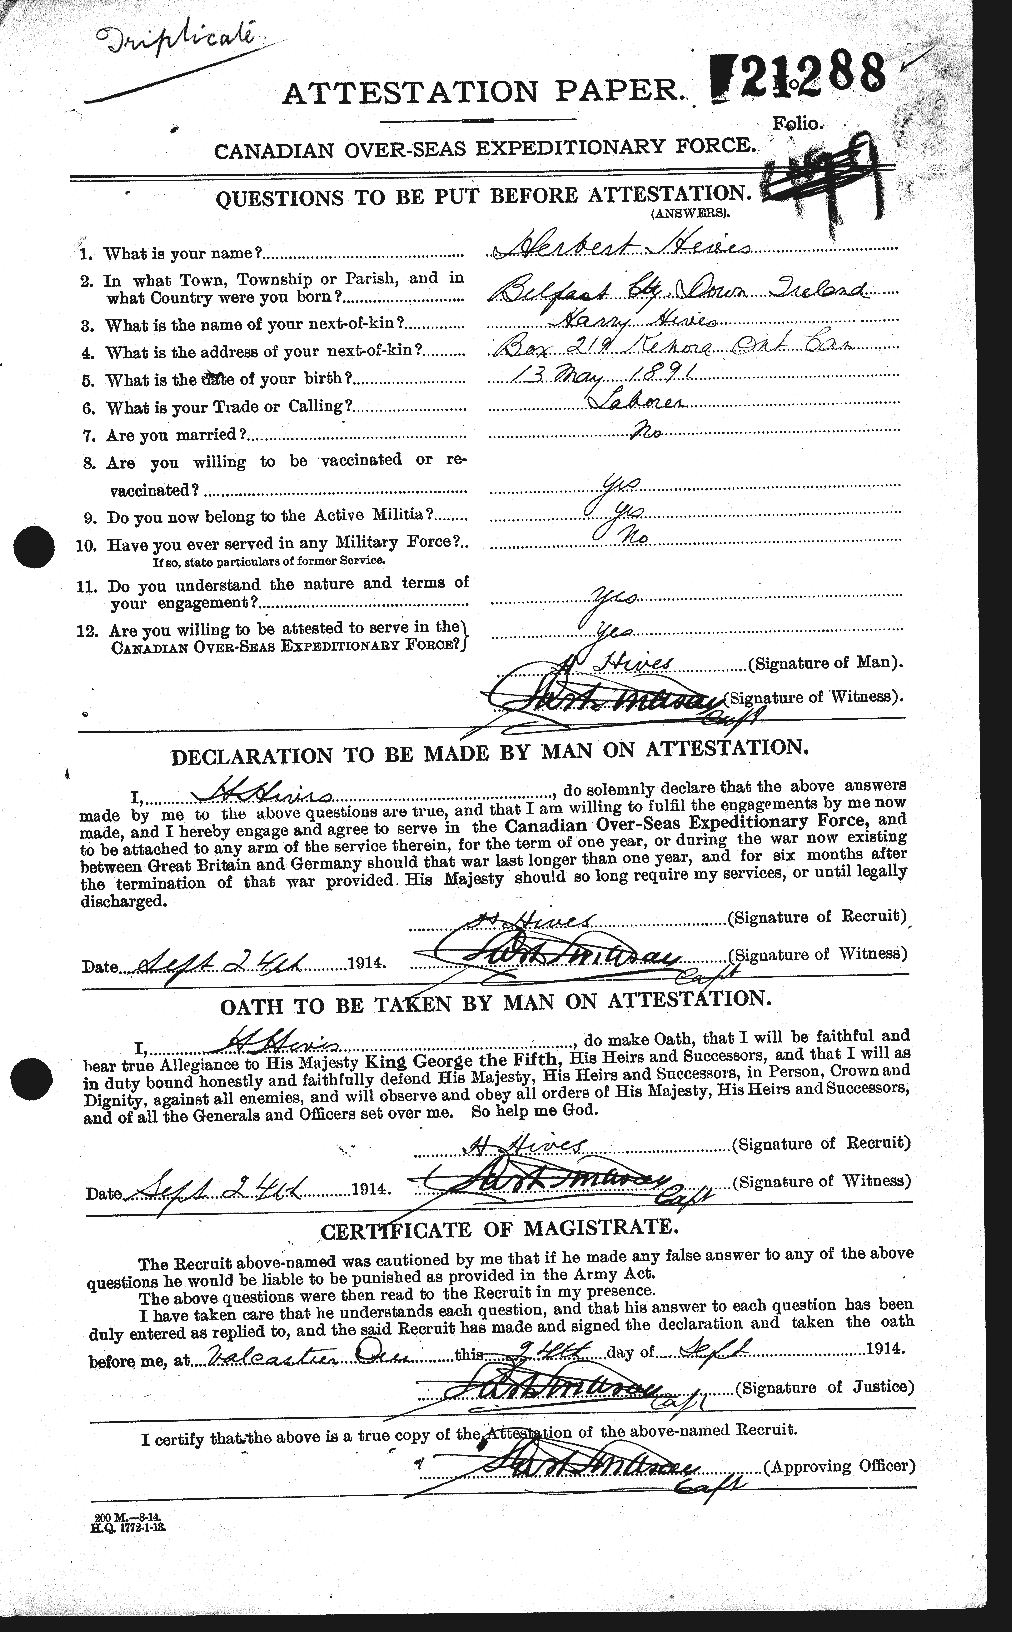 Dossiers du Personnel de la Première Guerre mondiale - CEC 394676a